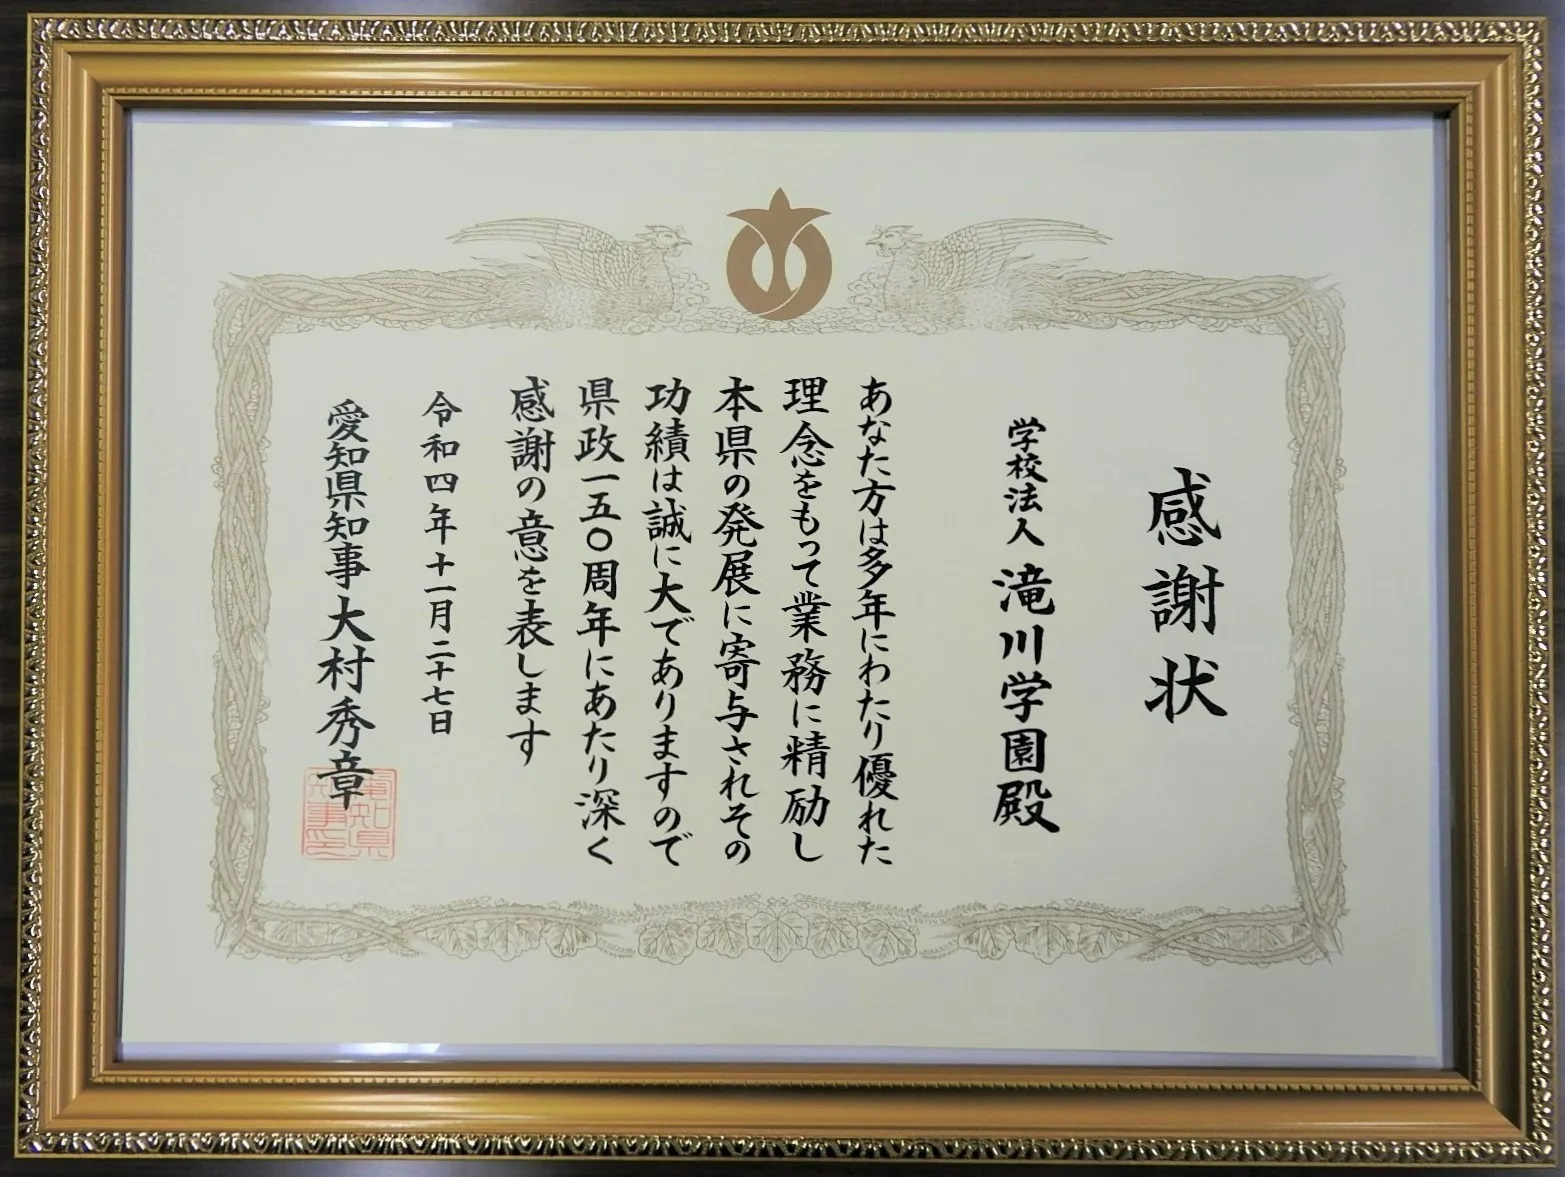 本学園が愛知県より感謝状を拝受いたしました。